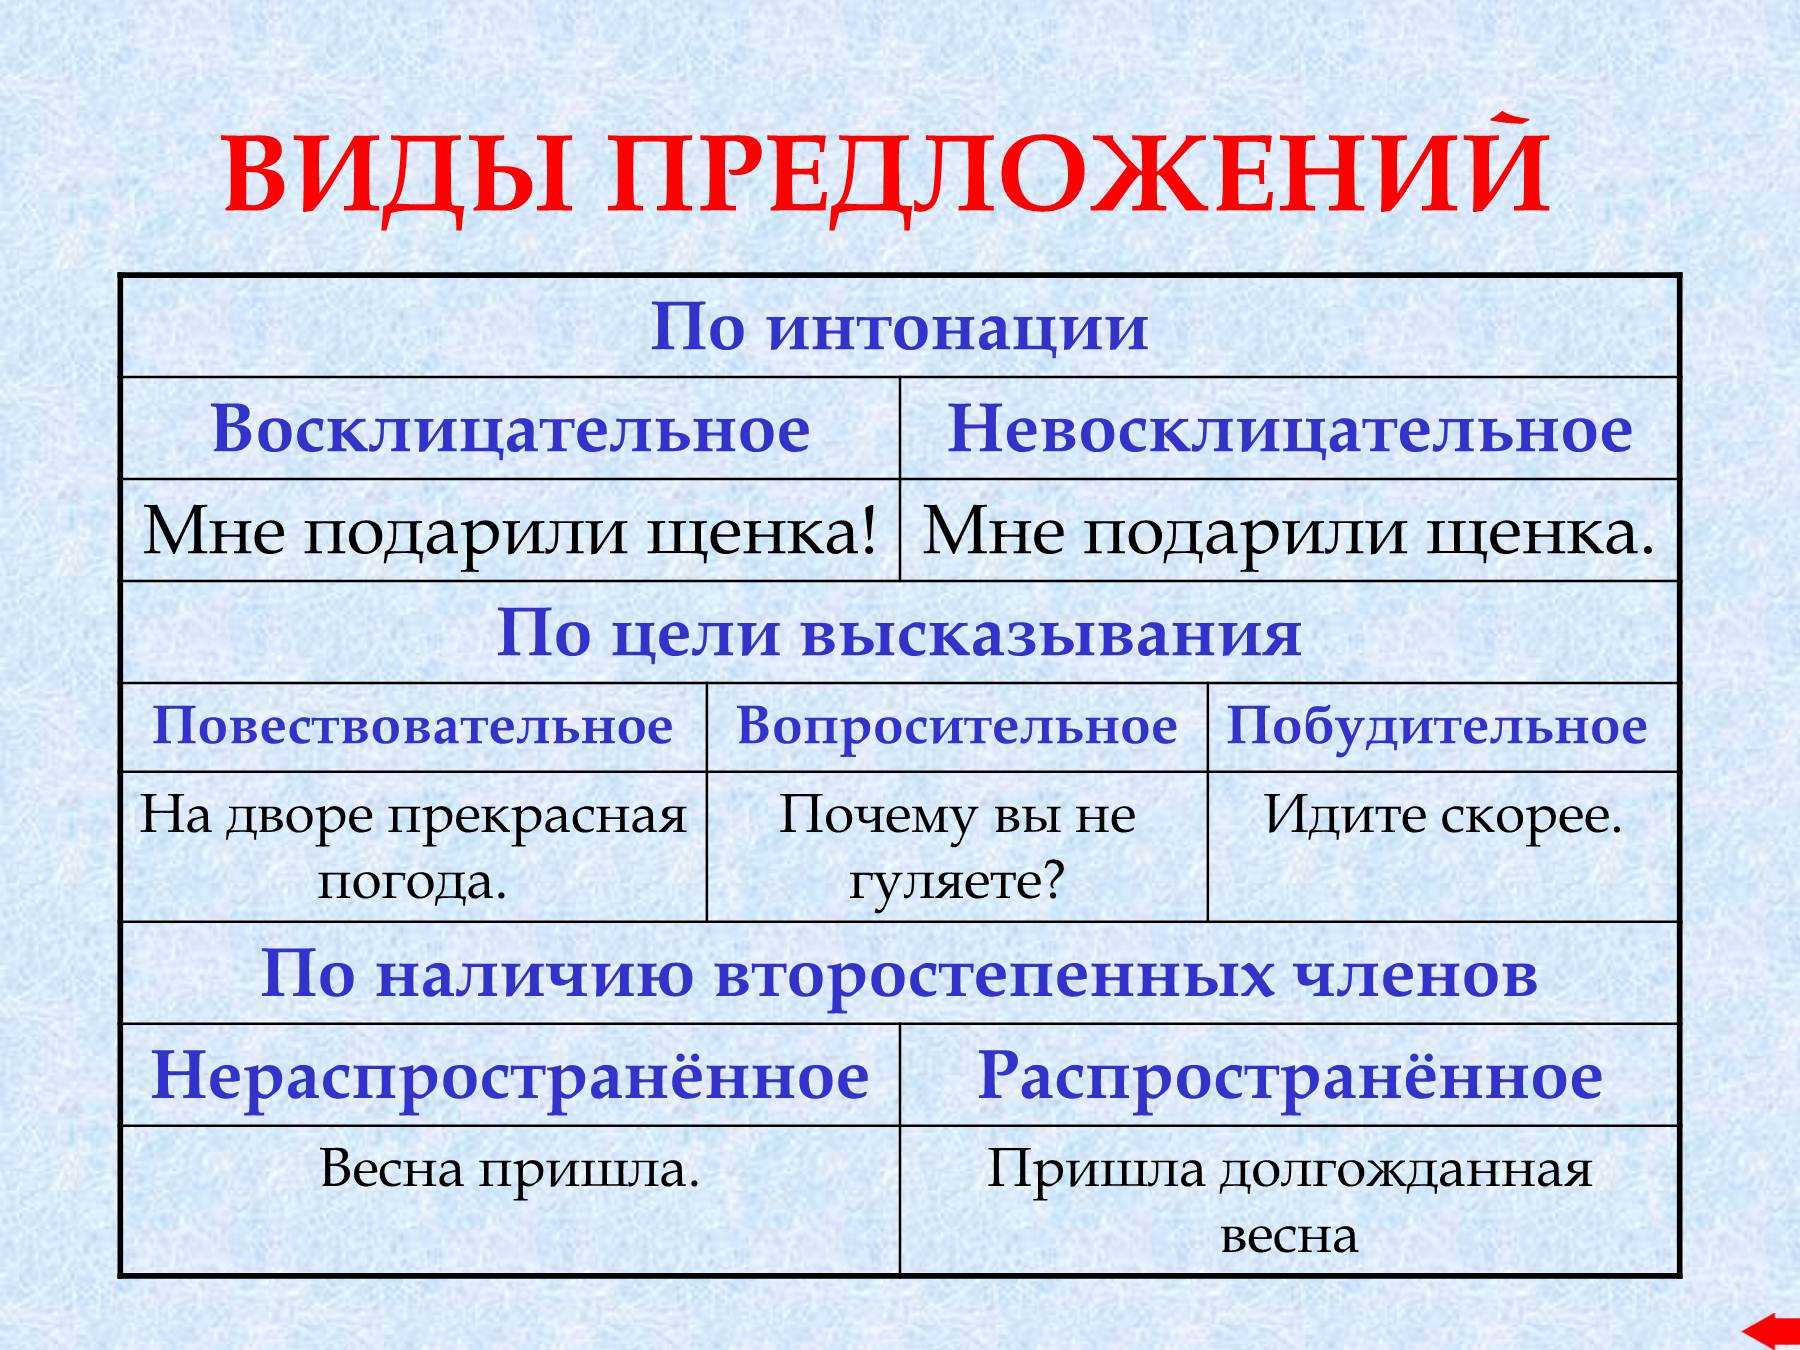 Виды предложений по цели высказывания и интонации в русском языке